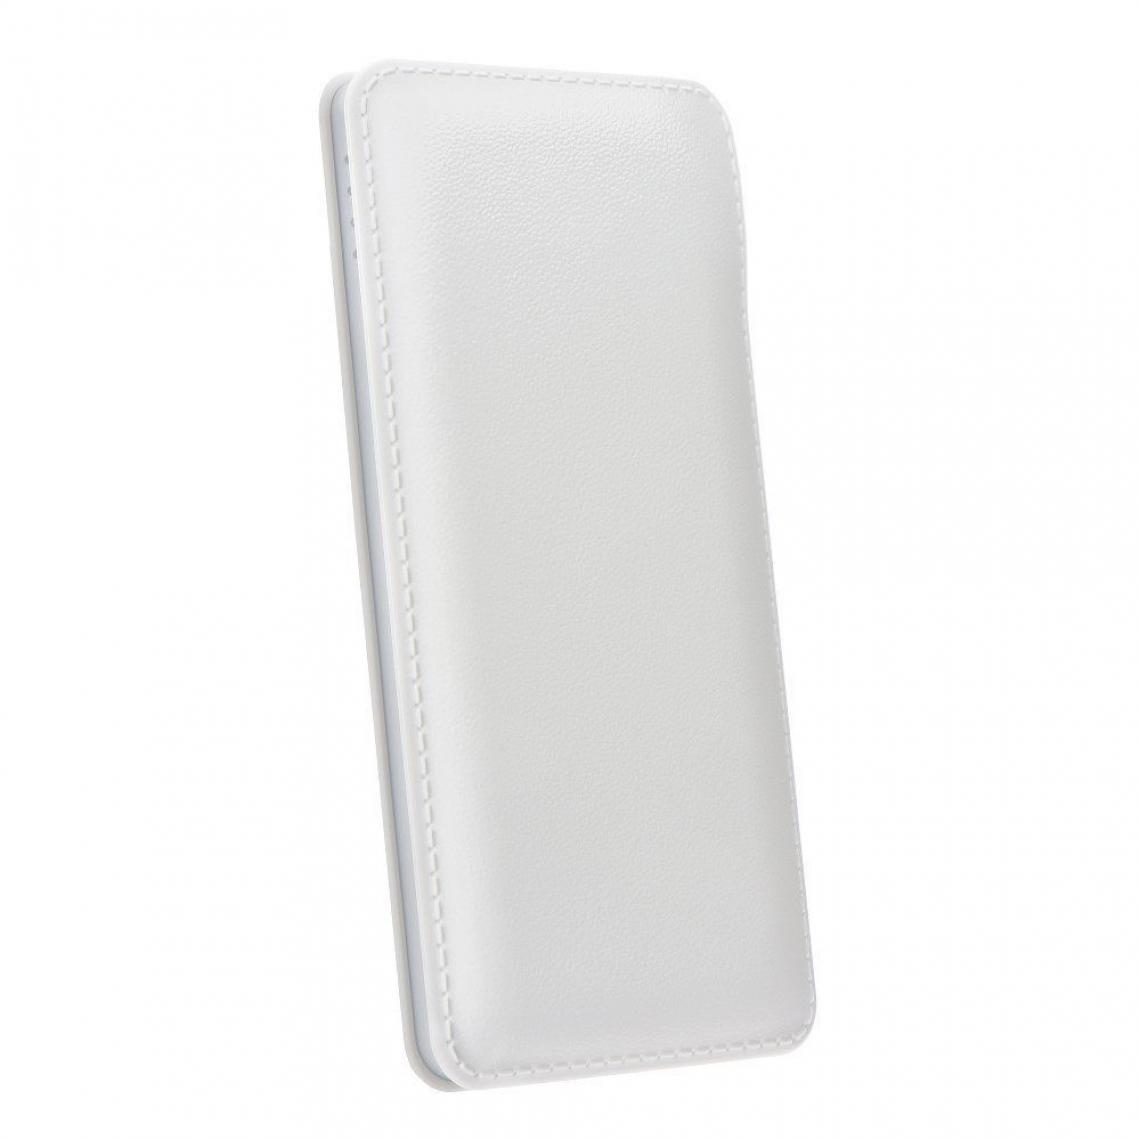 Ozzzo - Chargeur batterie externe 20000 mAh powerbank ozzzo blanc pour Asus ZenPad 7.0" - Autres accessoires smartphone